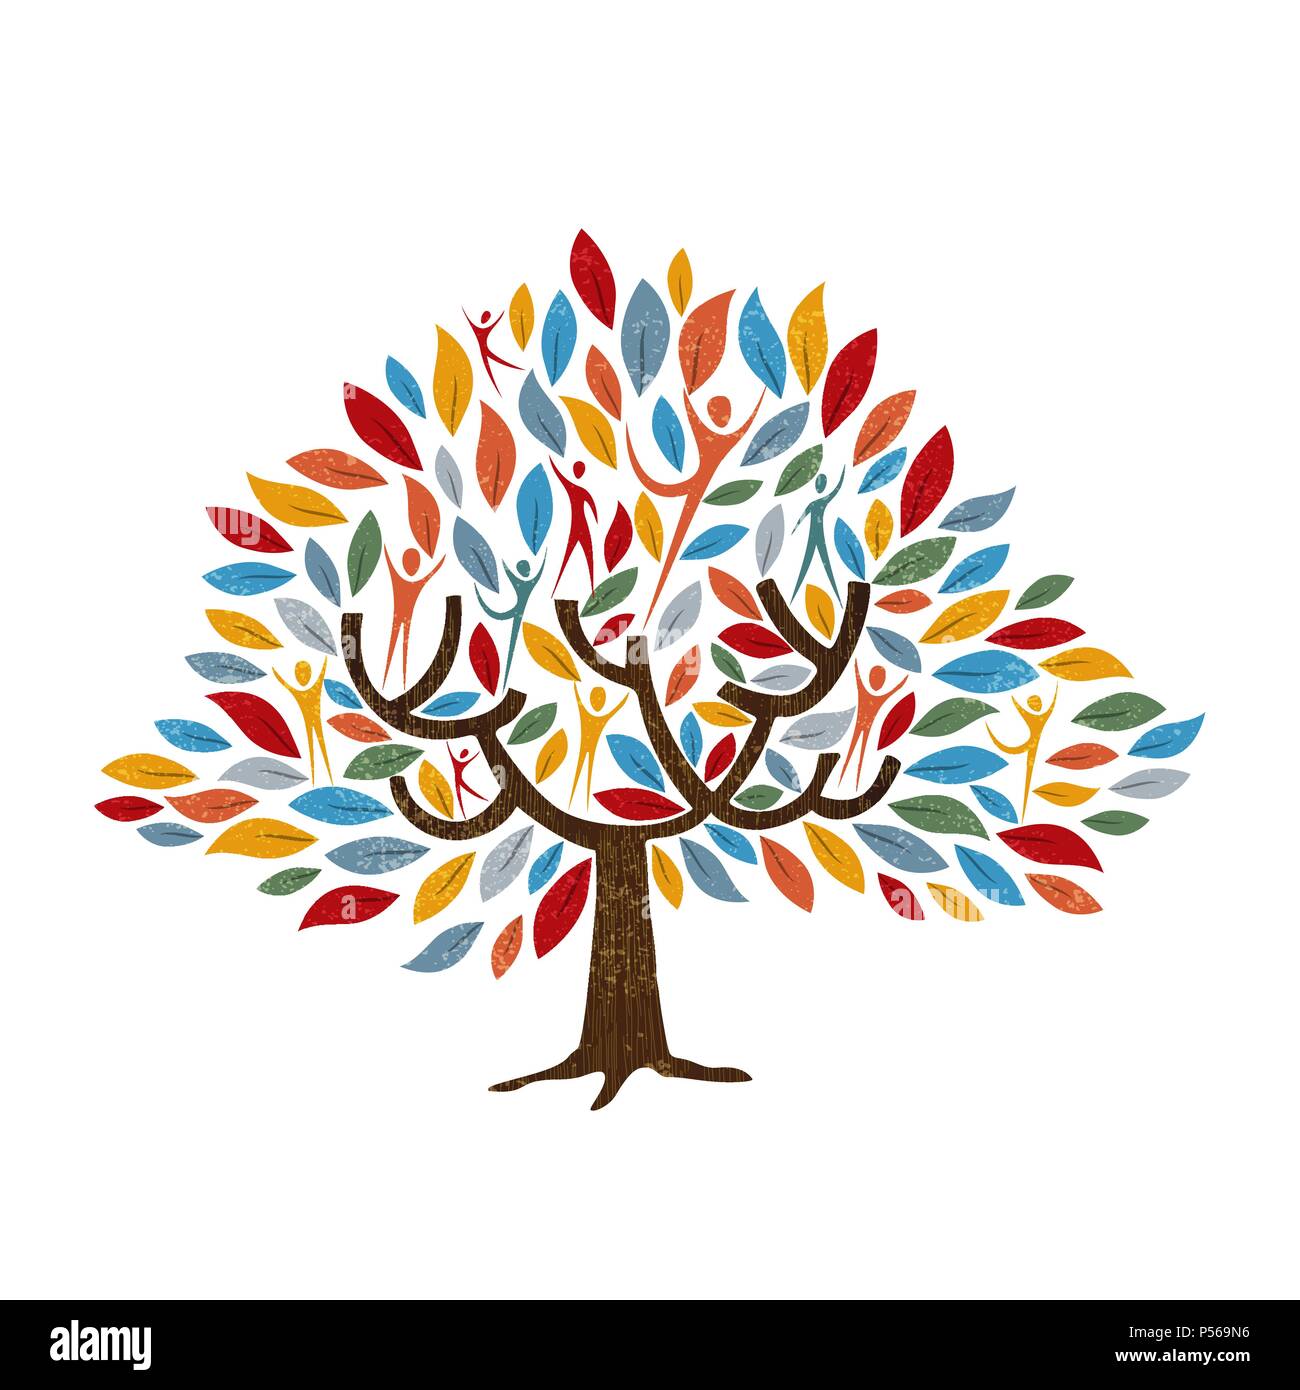 Symbole de l'arbre de famille avec des gens et de la couleur des feuilles. Concept illustration pour aider la communauté, l'environnement ou la diversité de la culture du projet. Vecteur EPS10. Illustration de Vecteur